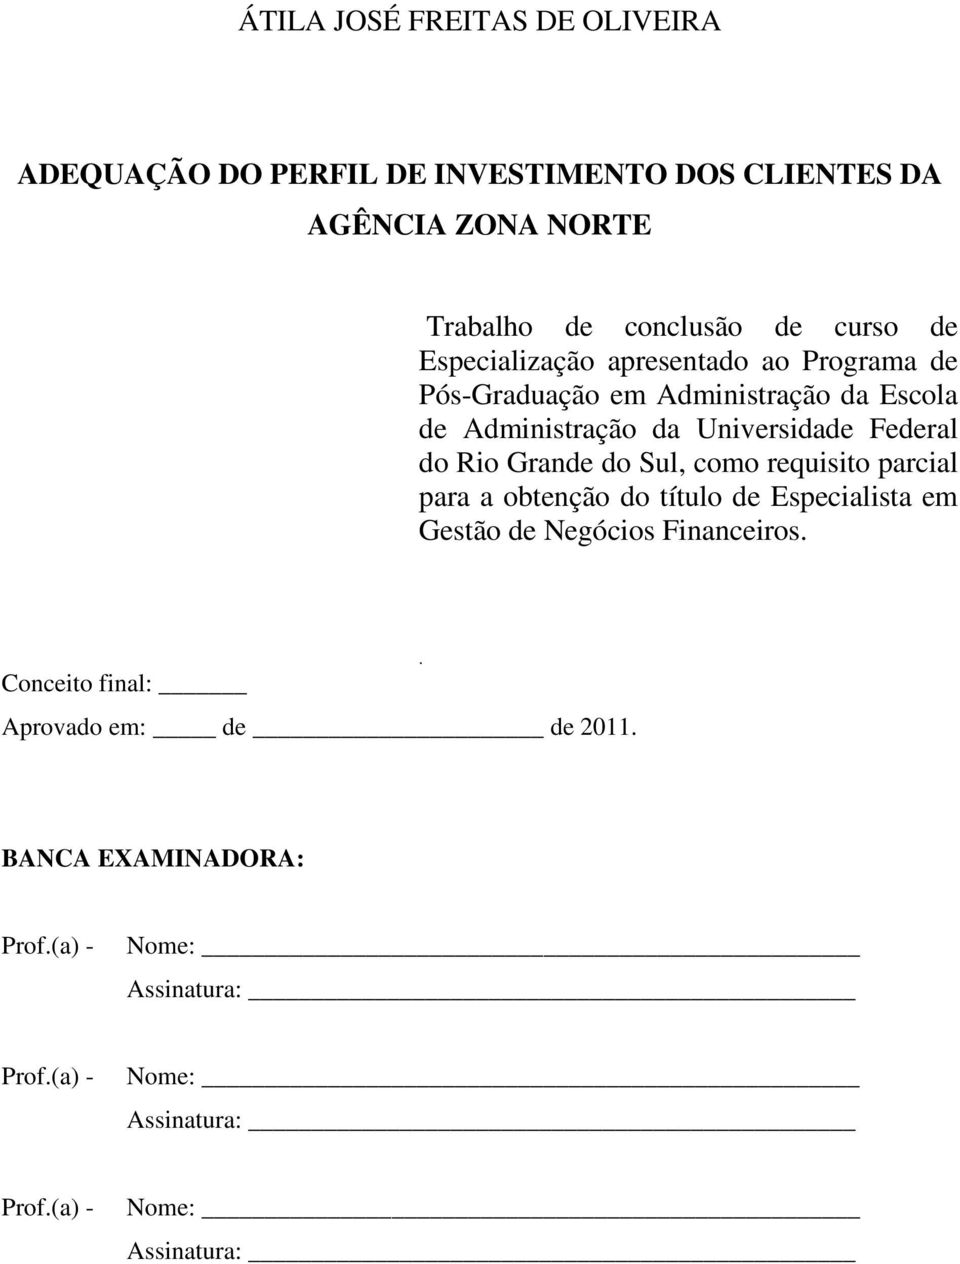 Rio Grande do Sul, como requisito parcial para a obtenção do título de Especialista em Gestão de Negócios Financeiros.